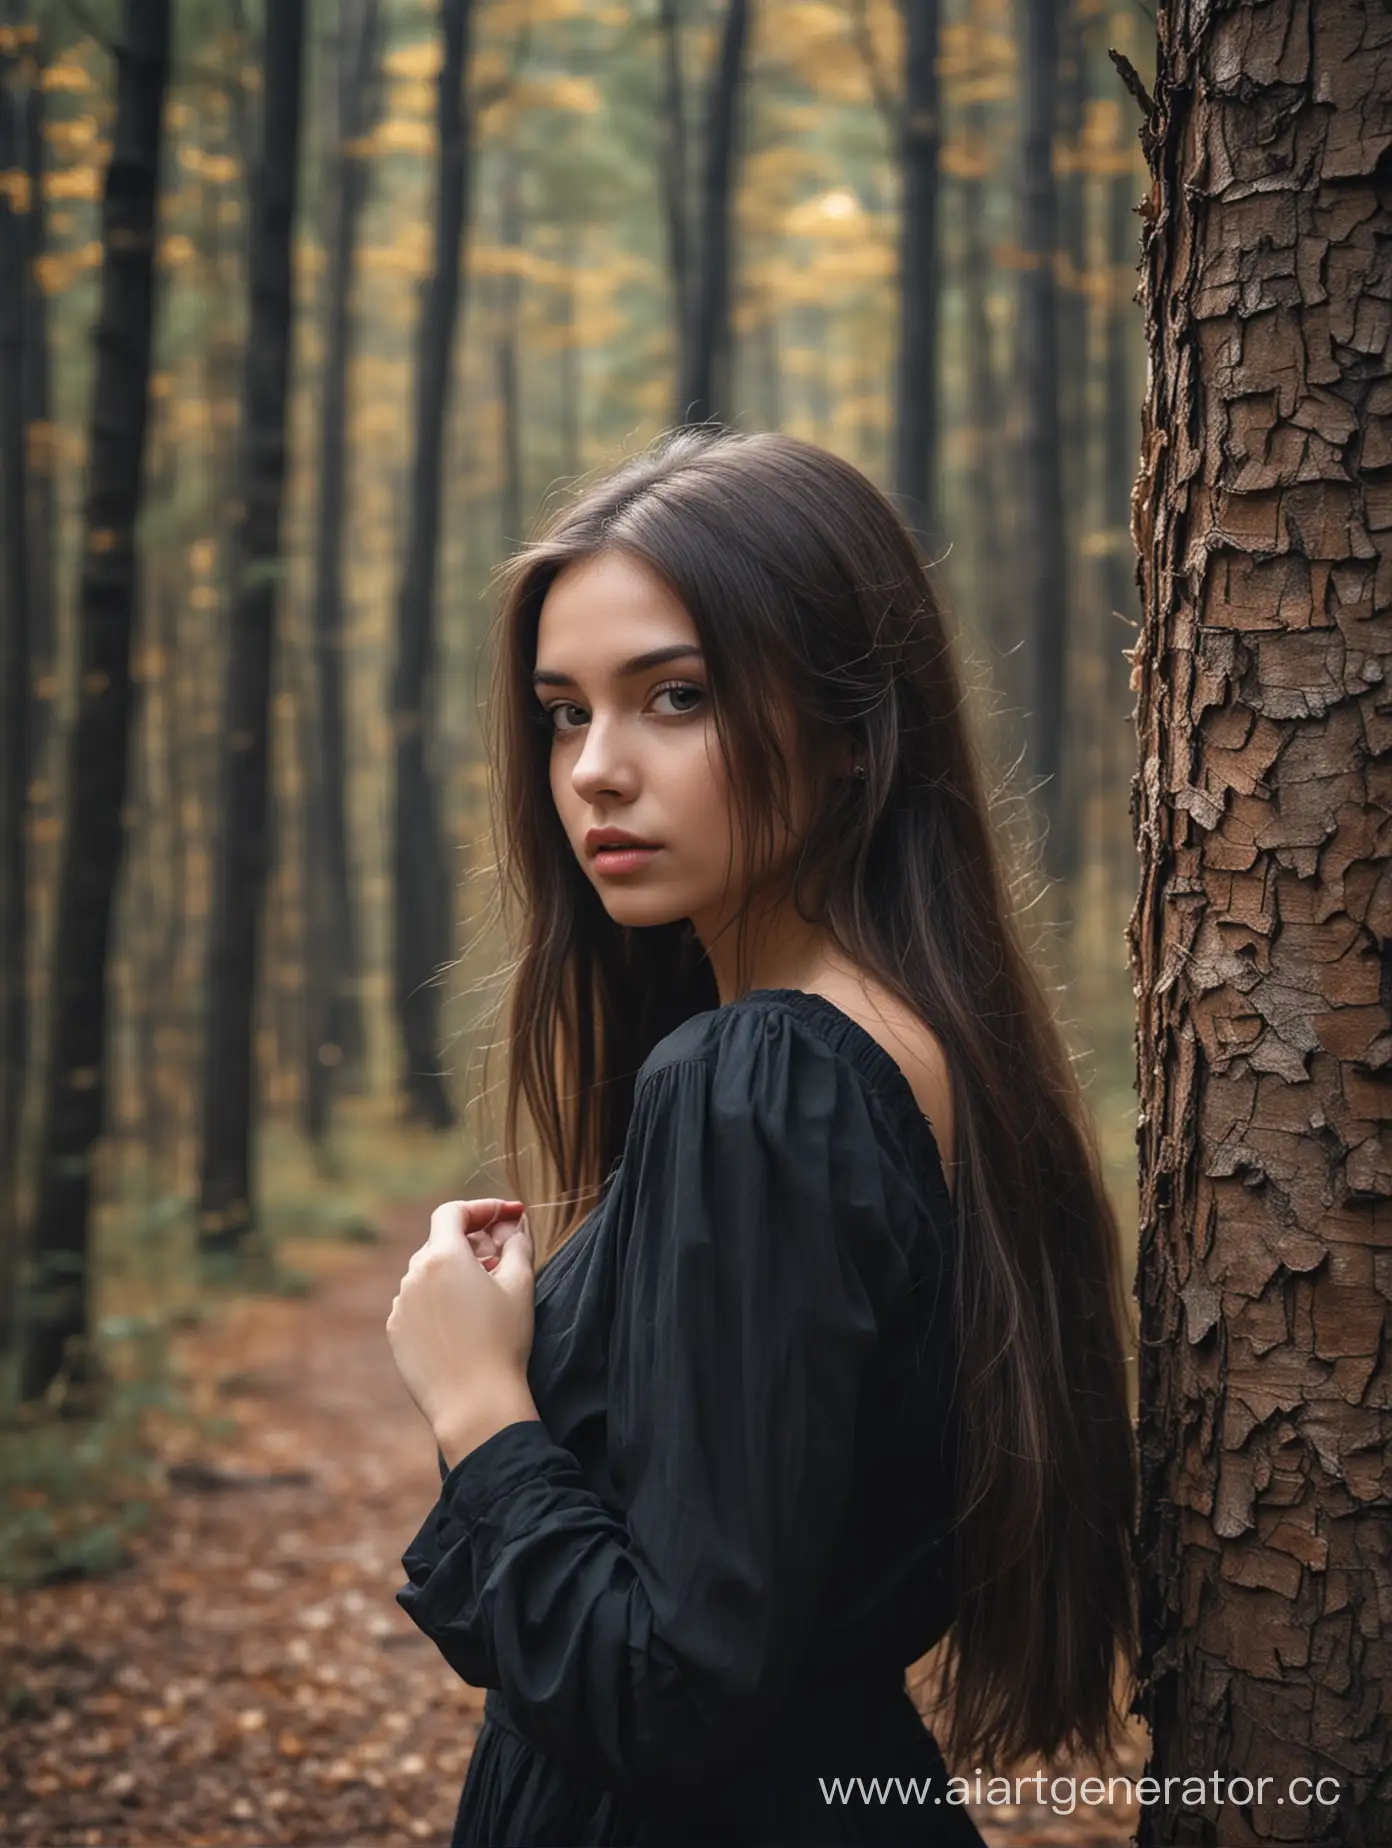 Создай очень красивую девушку которая сделала фото на фоне леса, она выглядит очень загадочно 